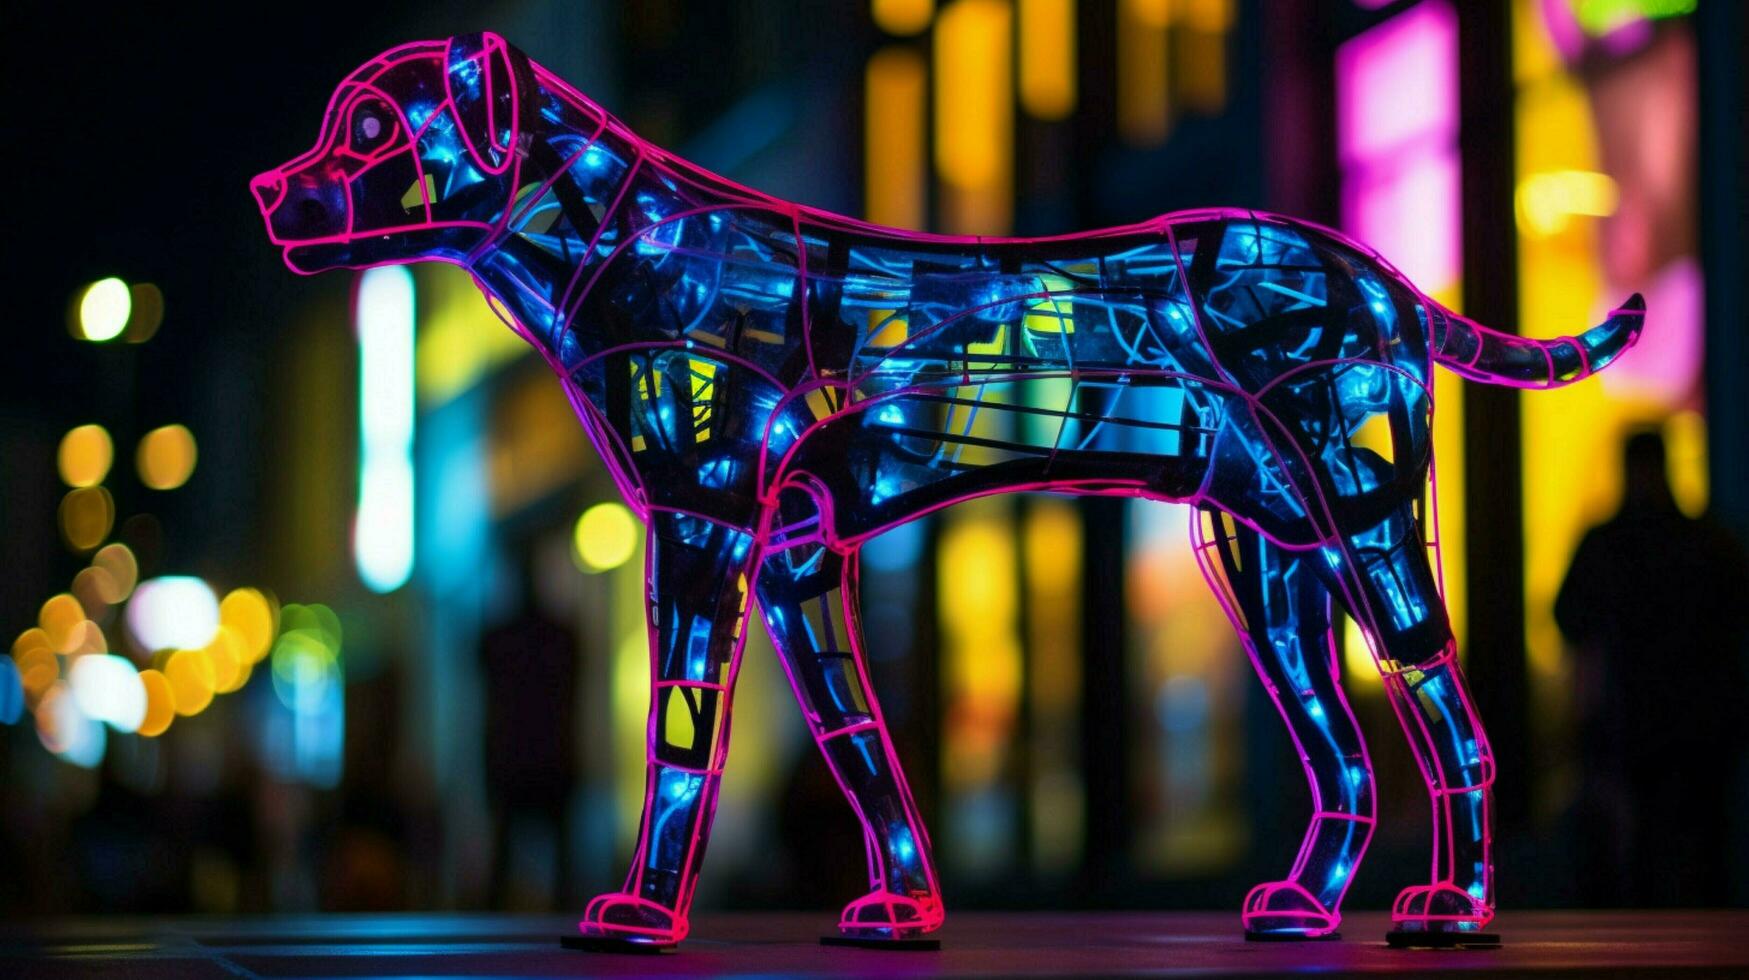 en neon leopard hund i en stad foto